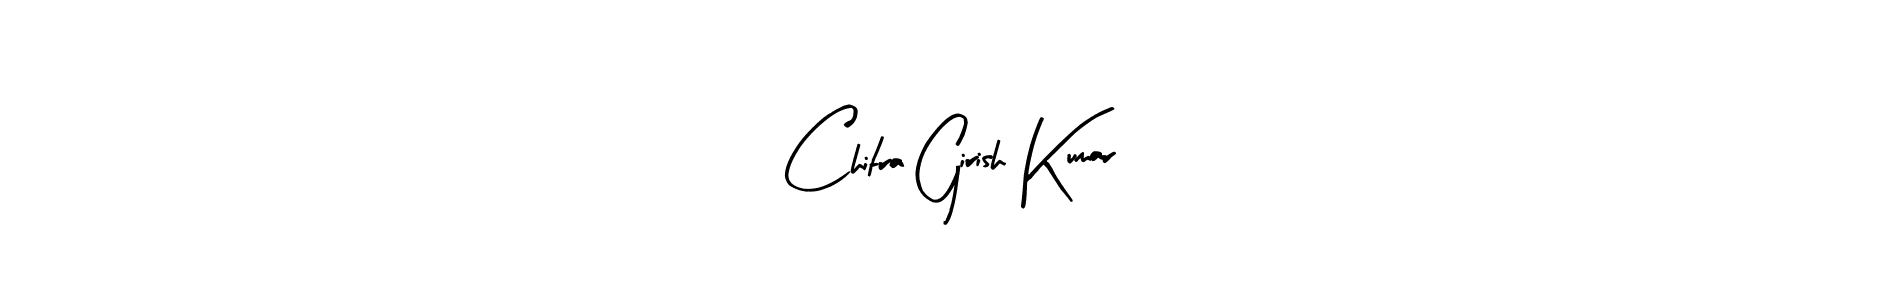 How to Draw Chitra Girish Kumar signature style? Arty Signature is a latest design signature styles for name Chitra Girish Kumar. Chitra Girish Kumar signature style 8 images and pictures png